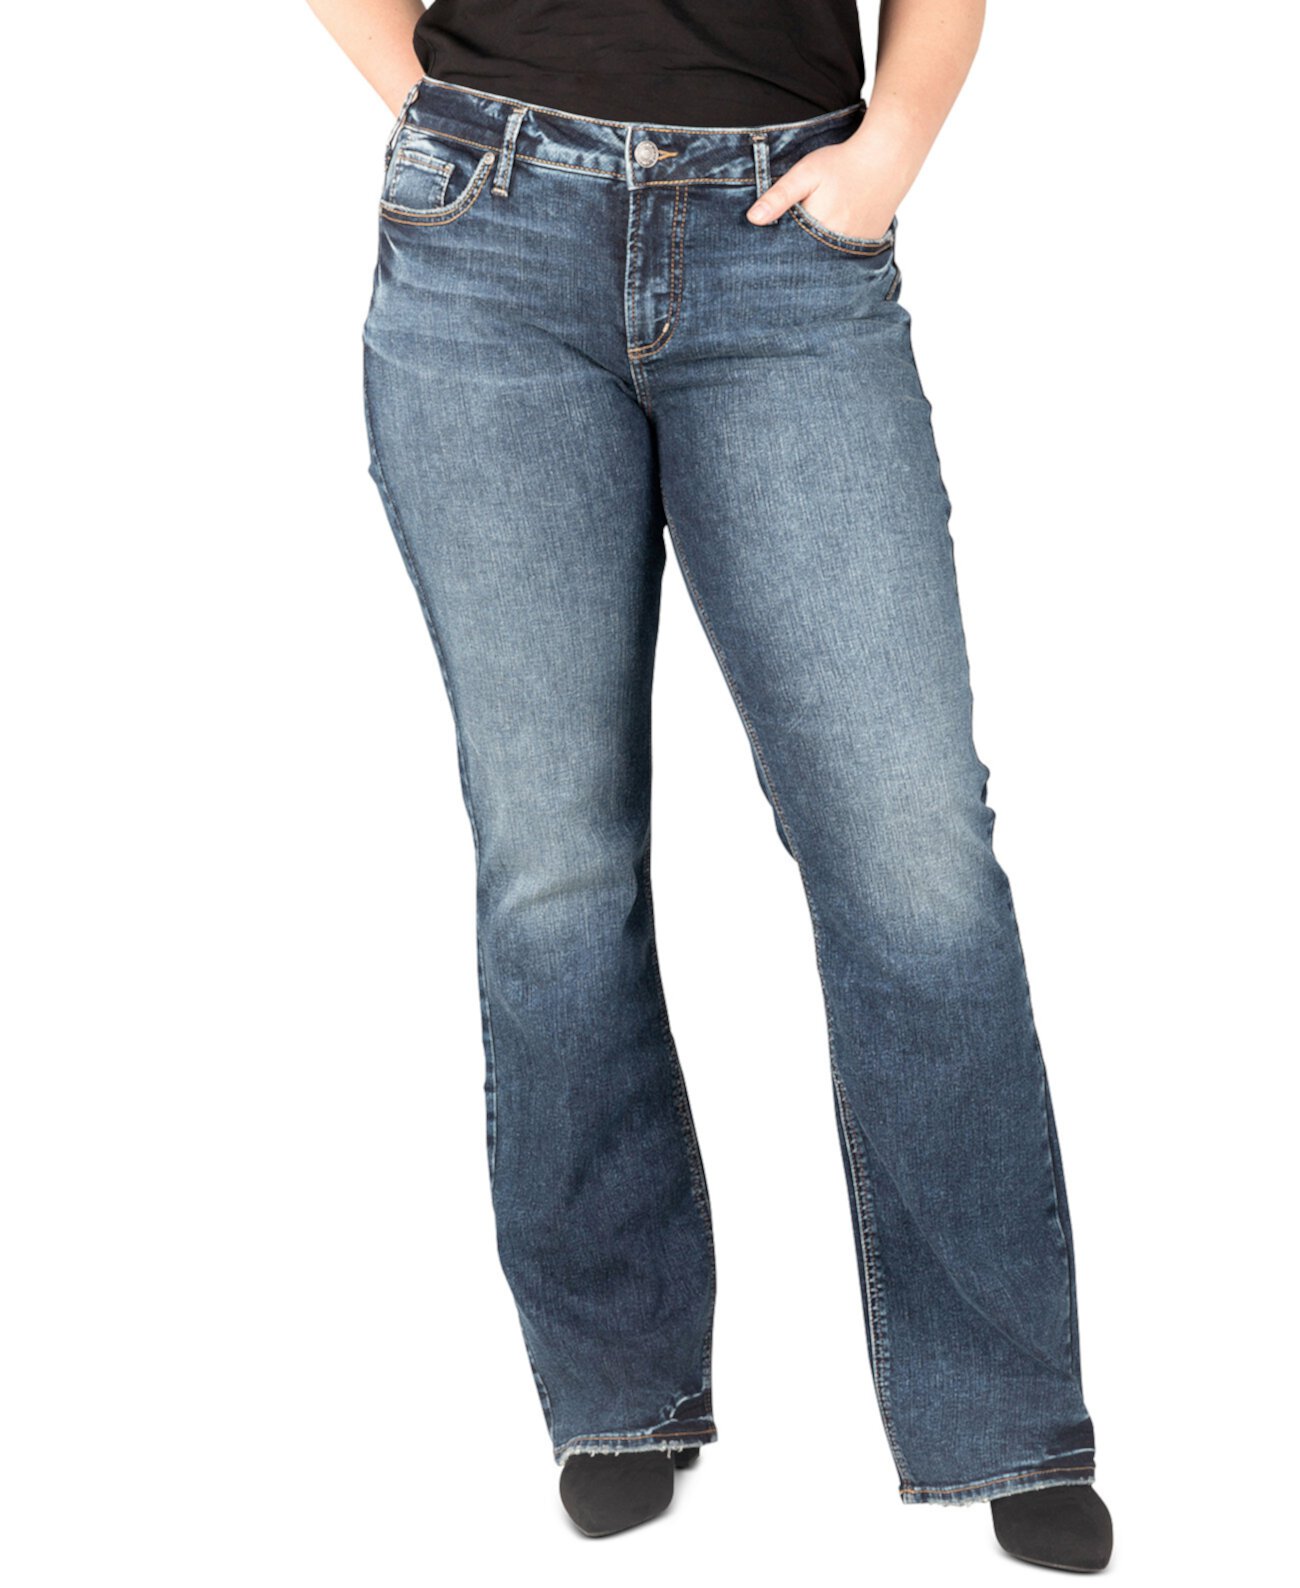 Узкие джинсы Elyse Bootcut больших размеров Silver Jeans Co.